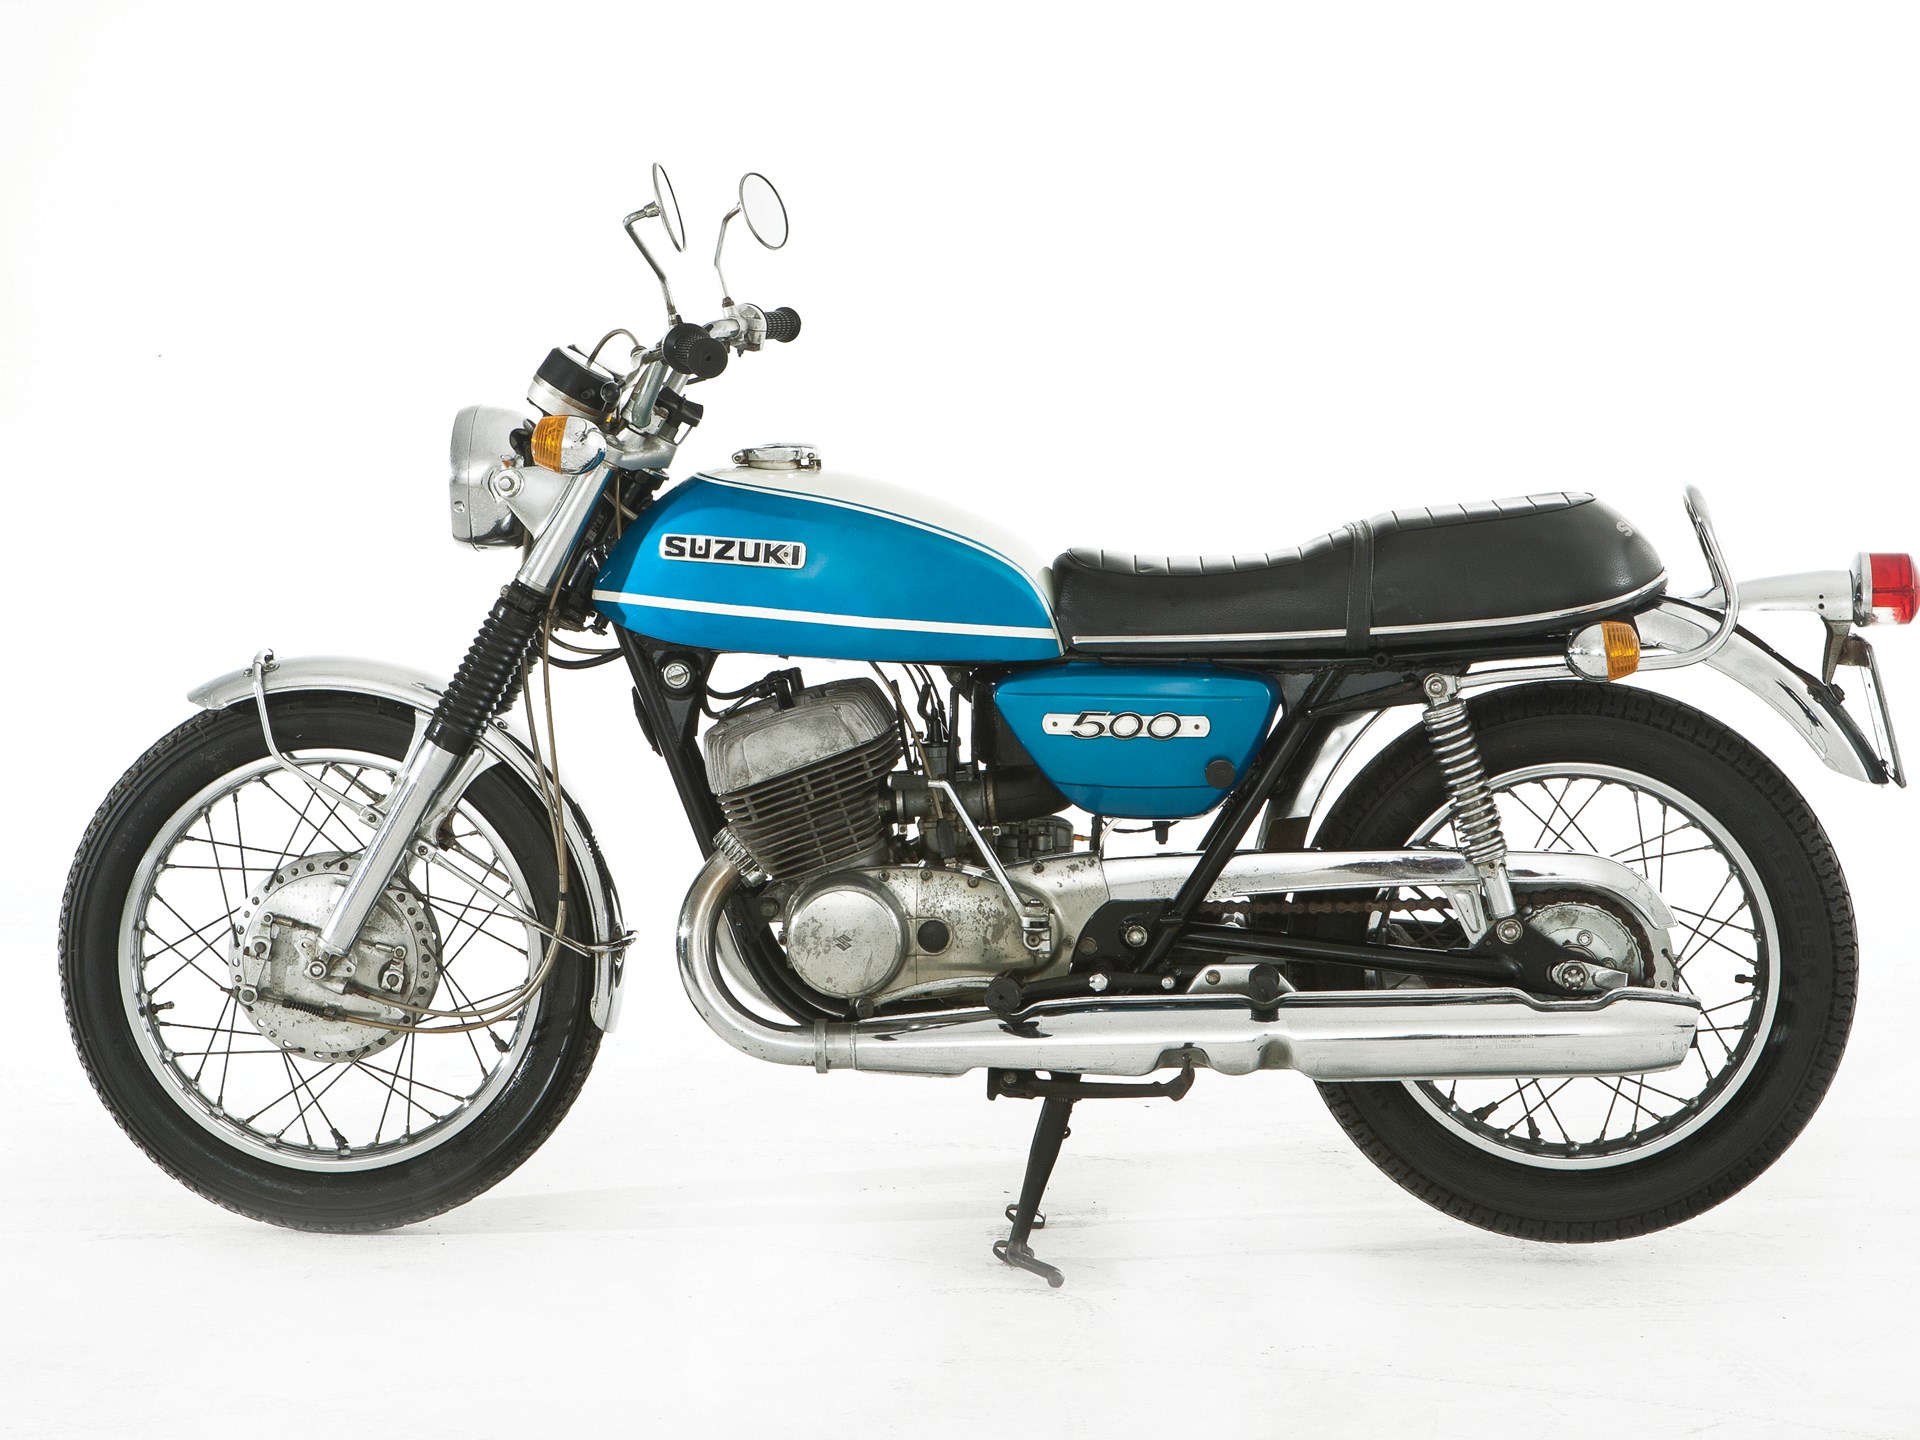 1970 suzuki motorbike